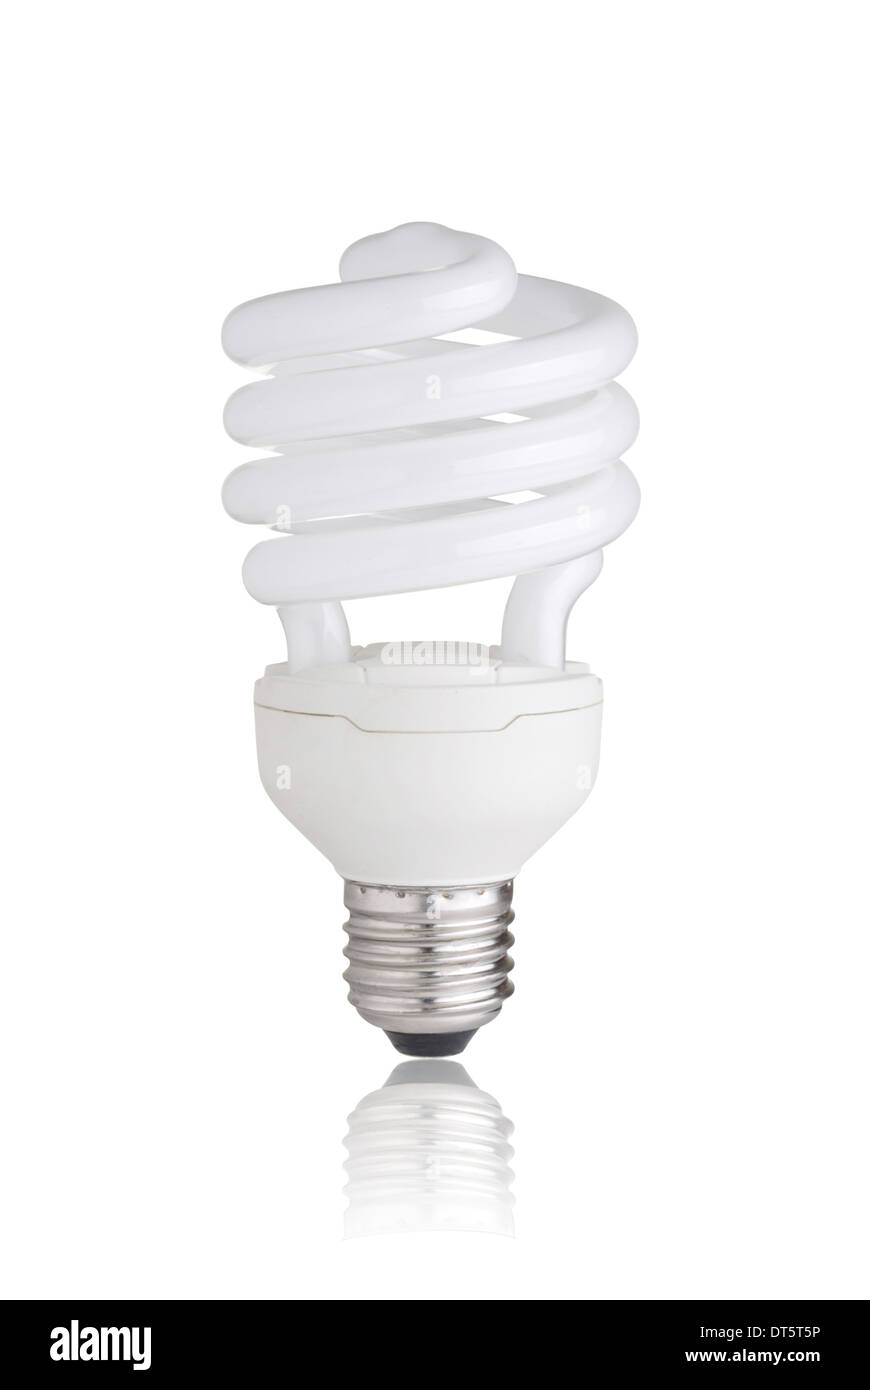 Energy saving light bulb isolated on white background Stock Photo